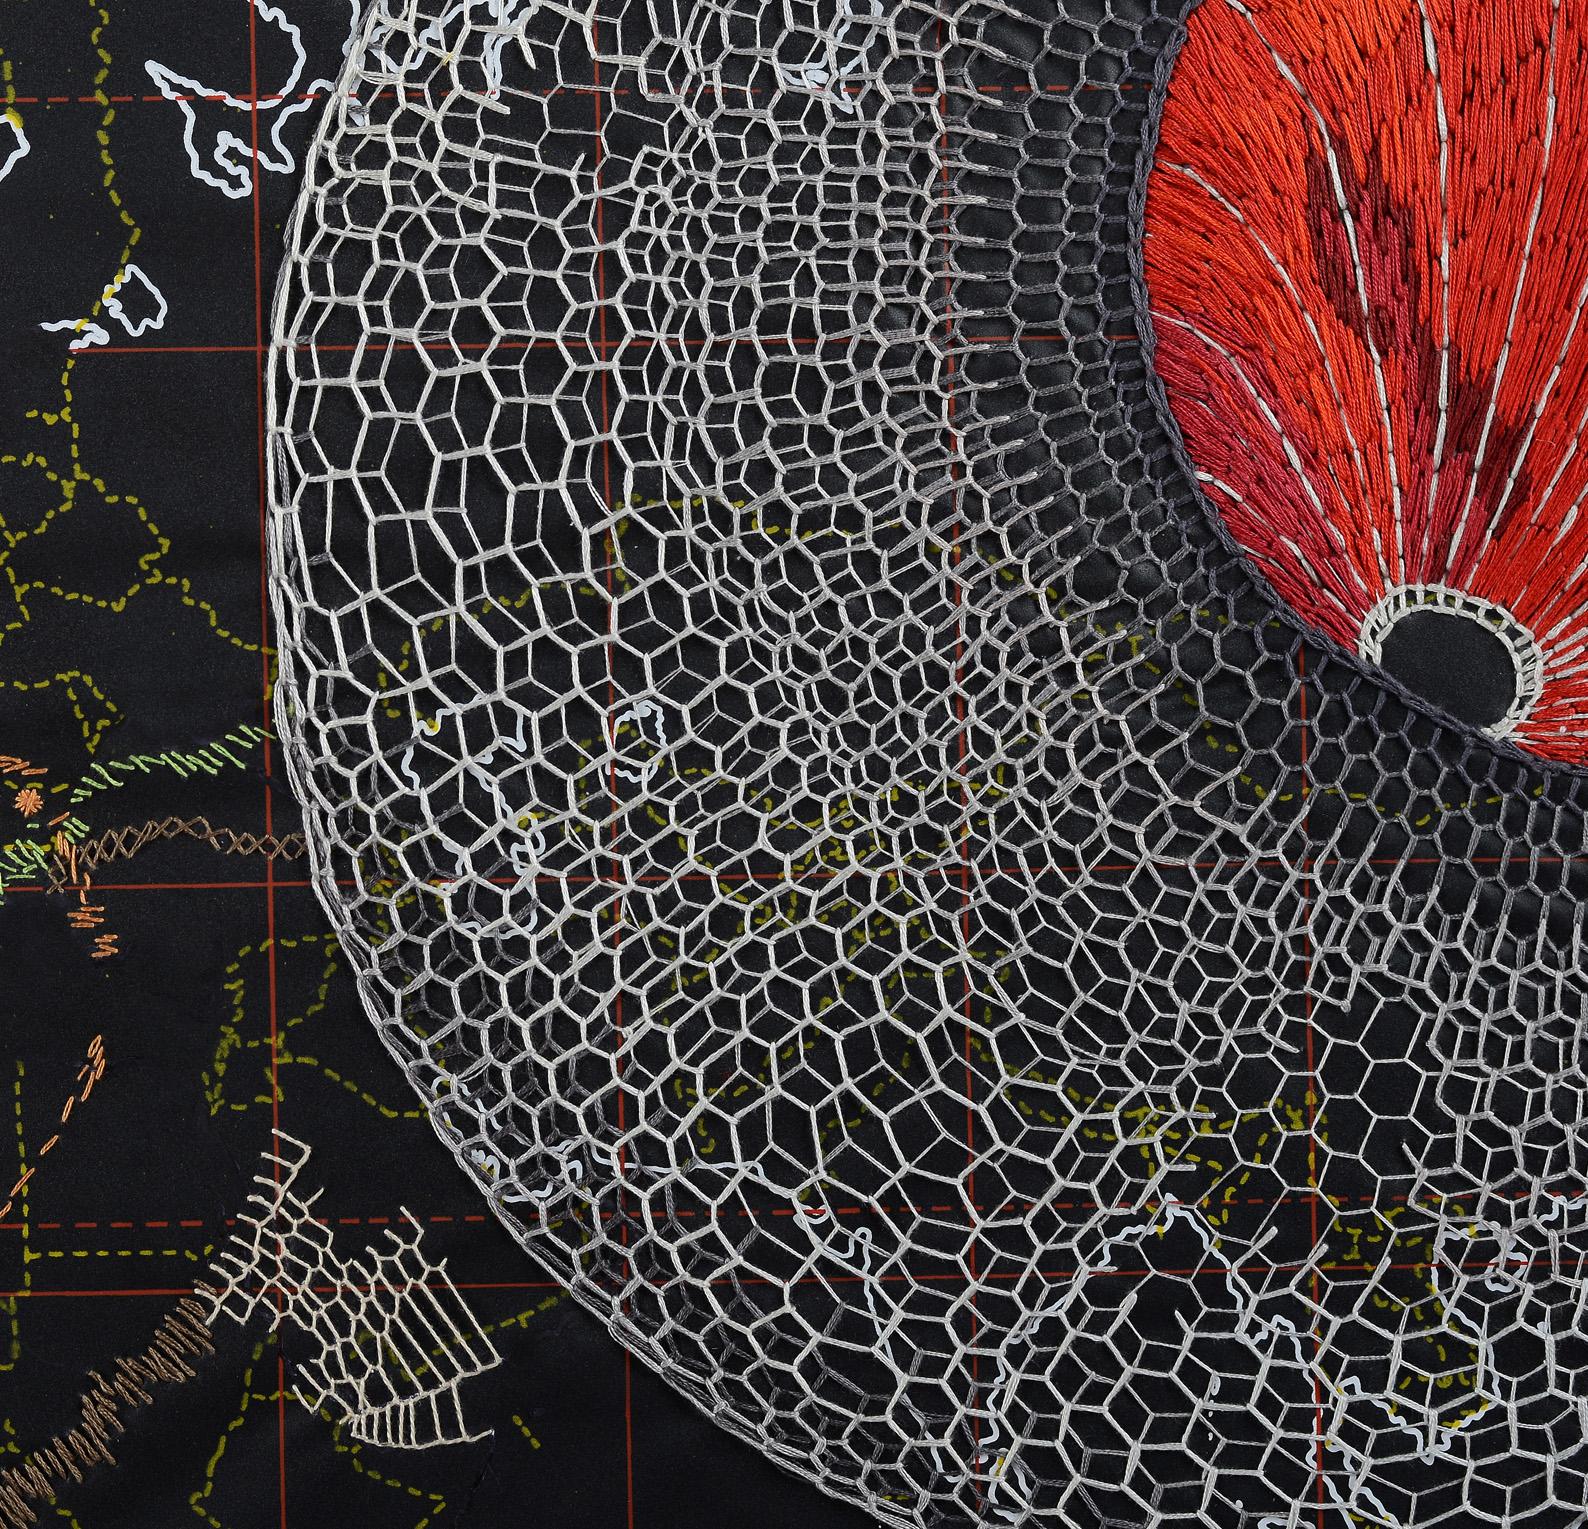 Ohne Titel, 2013 von Ana Seggiaro
Aus der Serie Cartographien 
Stickerei auf Leinwand (Karte)
Ungerahmt

Mitte der 2000er Jahre schuf Ana Seggiaro ihre ersten kleinformatigen Collagen auf Papier. Ausgehend von Buchseiten, Karten und Partituren führt